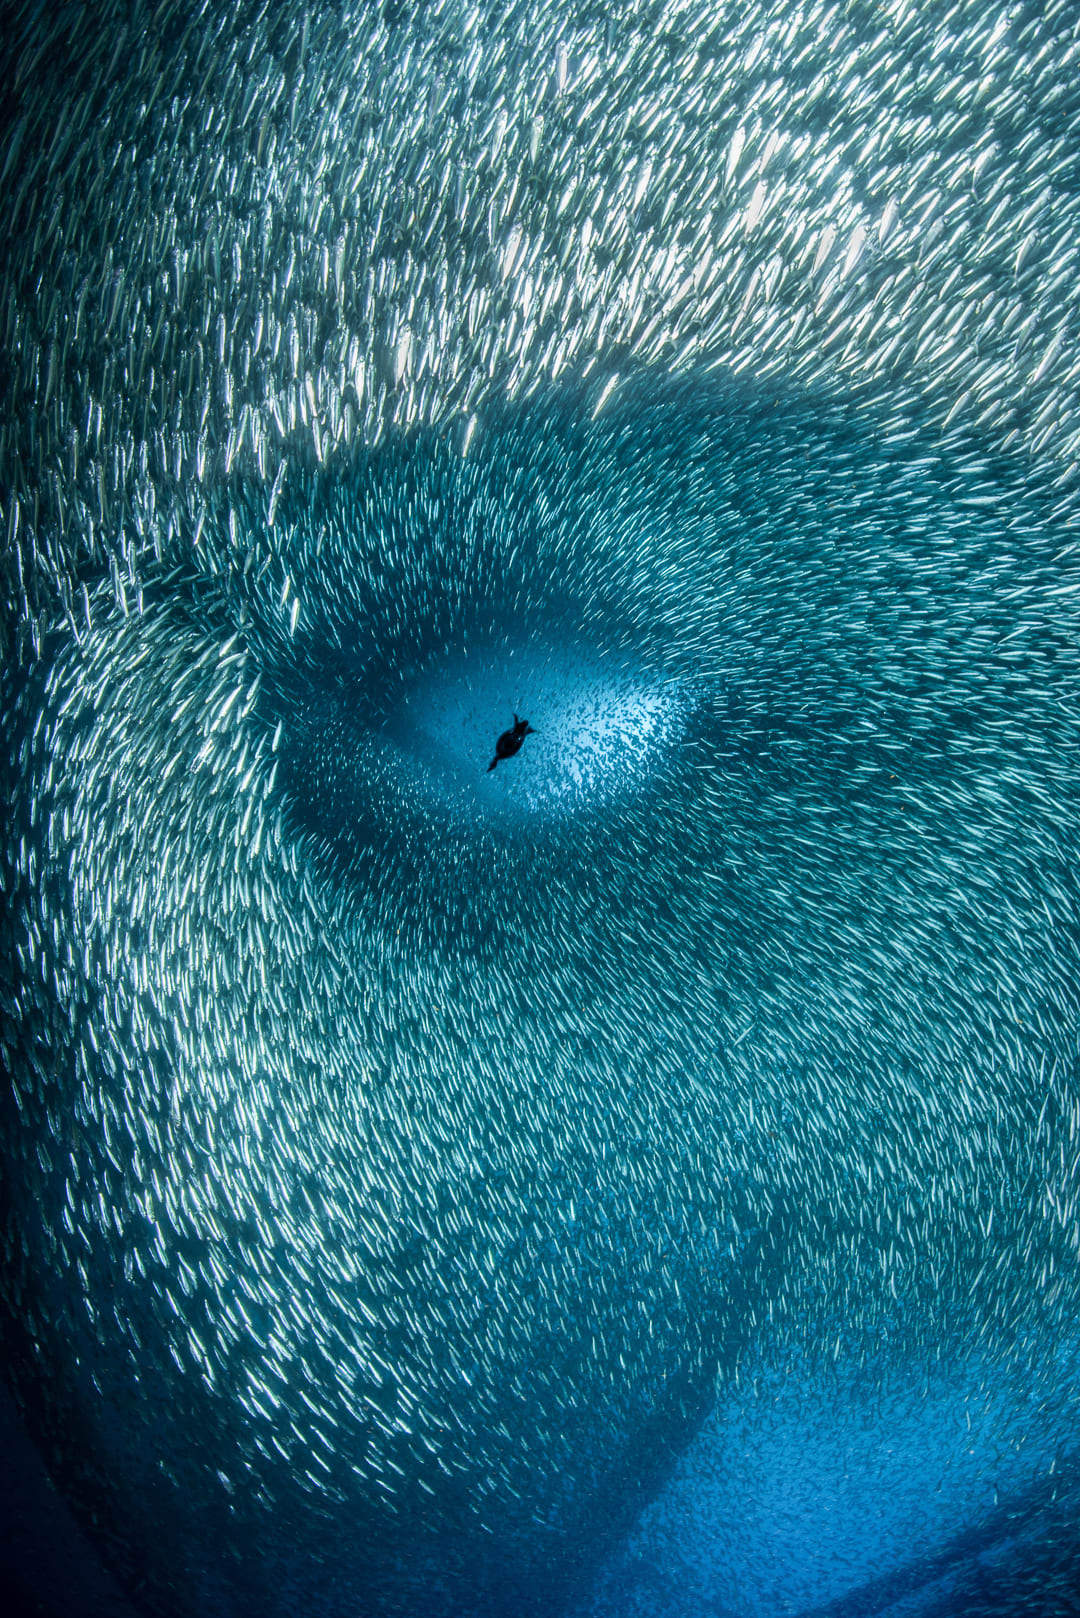 fotógrafo documentando "cara humana" En una encantadora escena submarina, ¿lo ves?